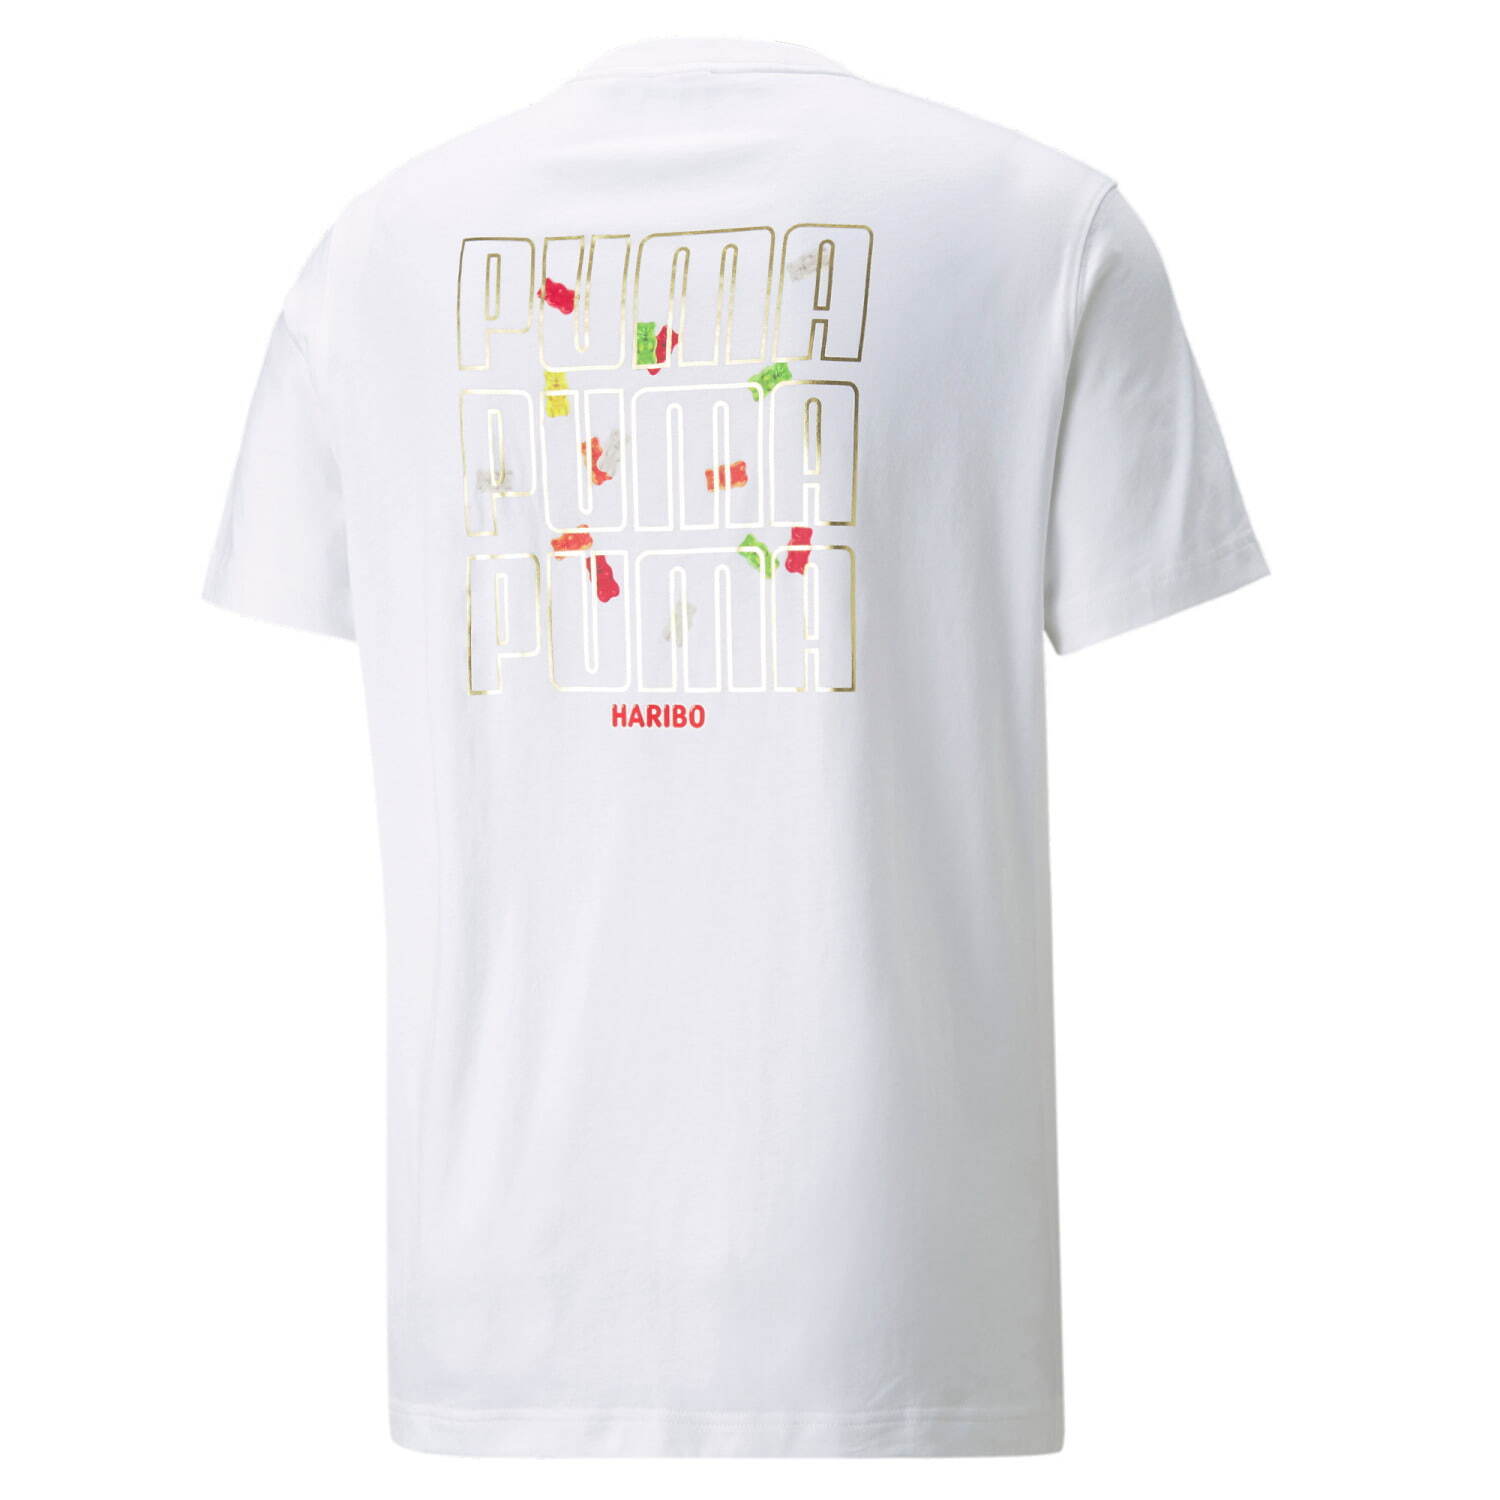 「プーマ x ハリボー グラフィック Tシャツ ユニセックス」4,400円(税込)